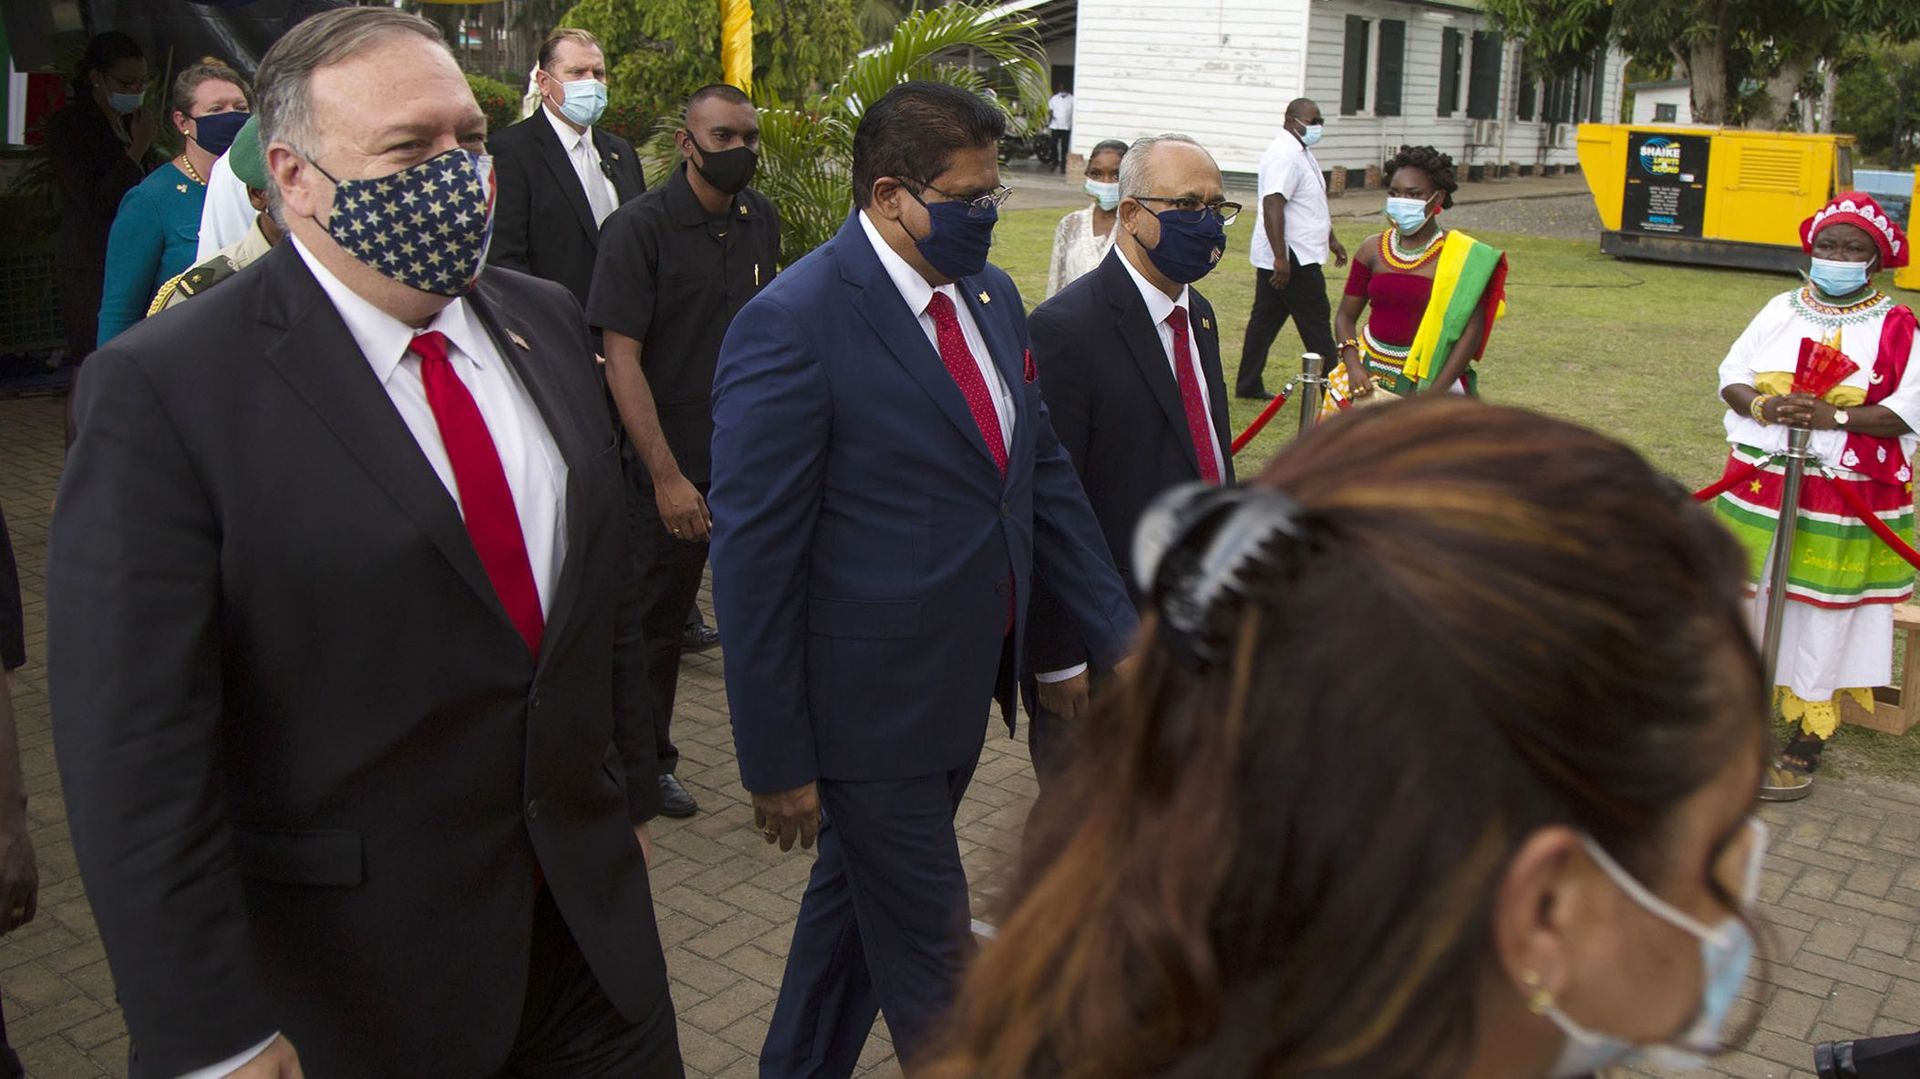 Le président vénézuélien Nicolas Maduro "doit partir", a affirmé le secrétaire d'État américain Mike Pompeo depuis le Guyana, pays limitrophe du Venezuela et deuxième étape d'un voyage en Amérique du Sud.